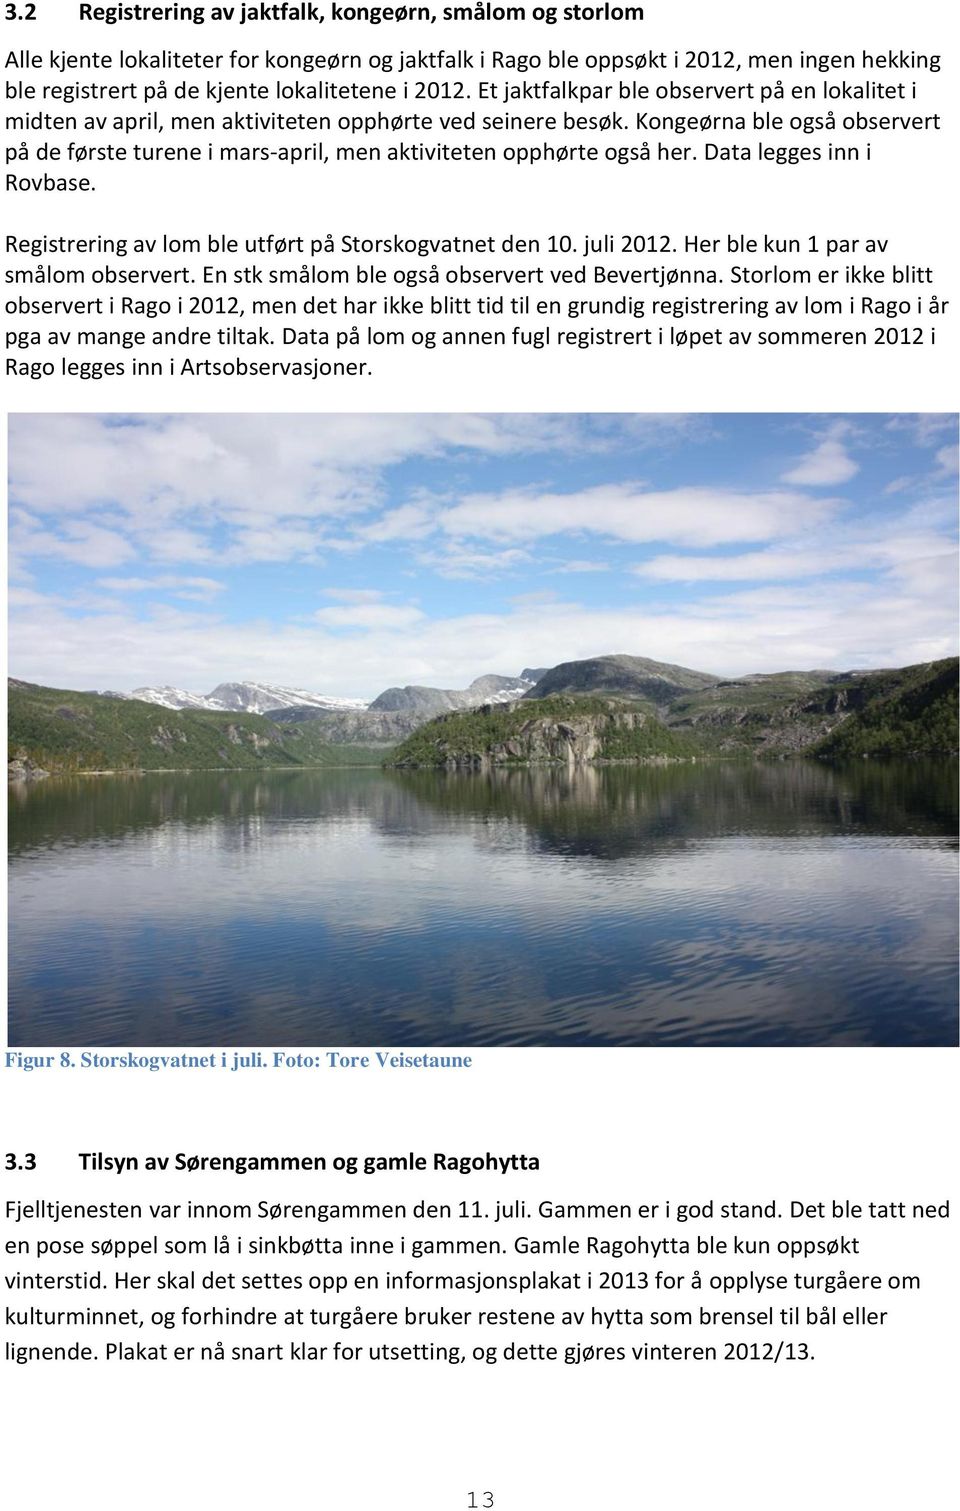 Kongeørna ble også observert på de første turene i mars-april, men aktiviteten opphørte også her. Data legges inn i Rovbase. Registrering av lom ble utført på Storskogvatnet den 10. juli 2012.